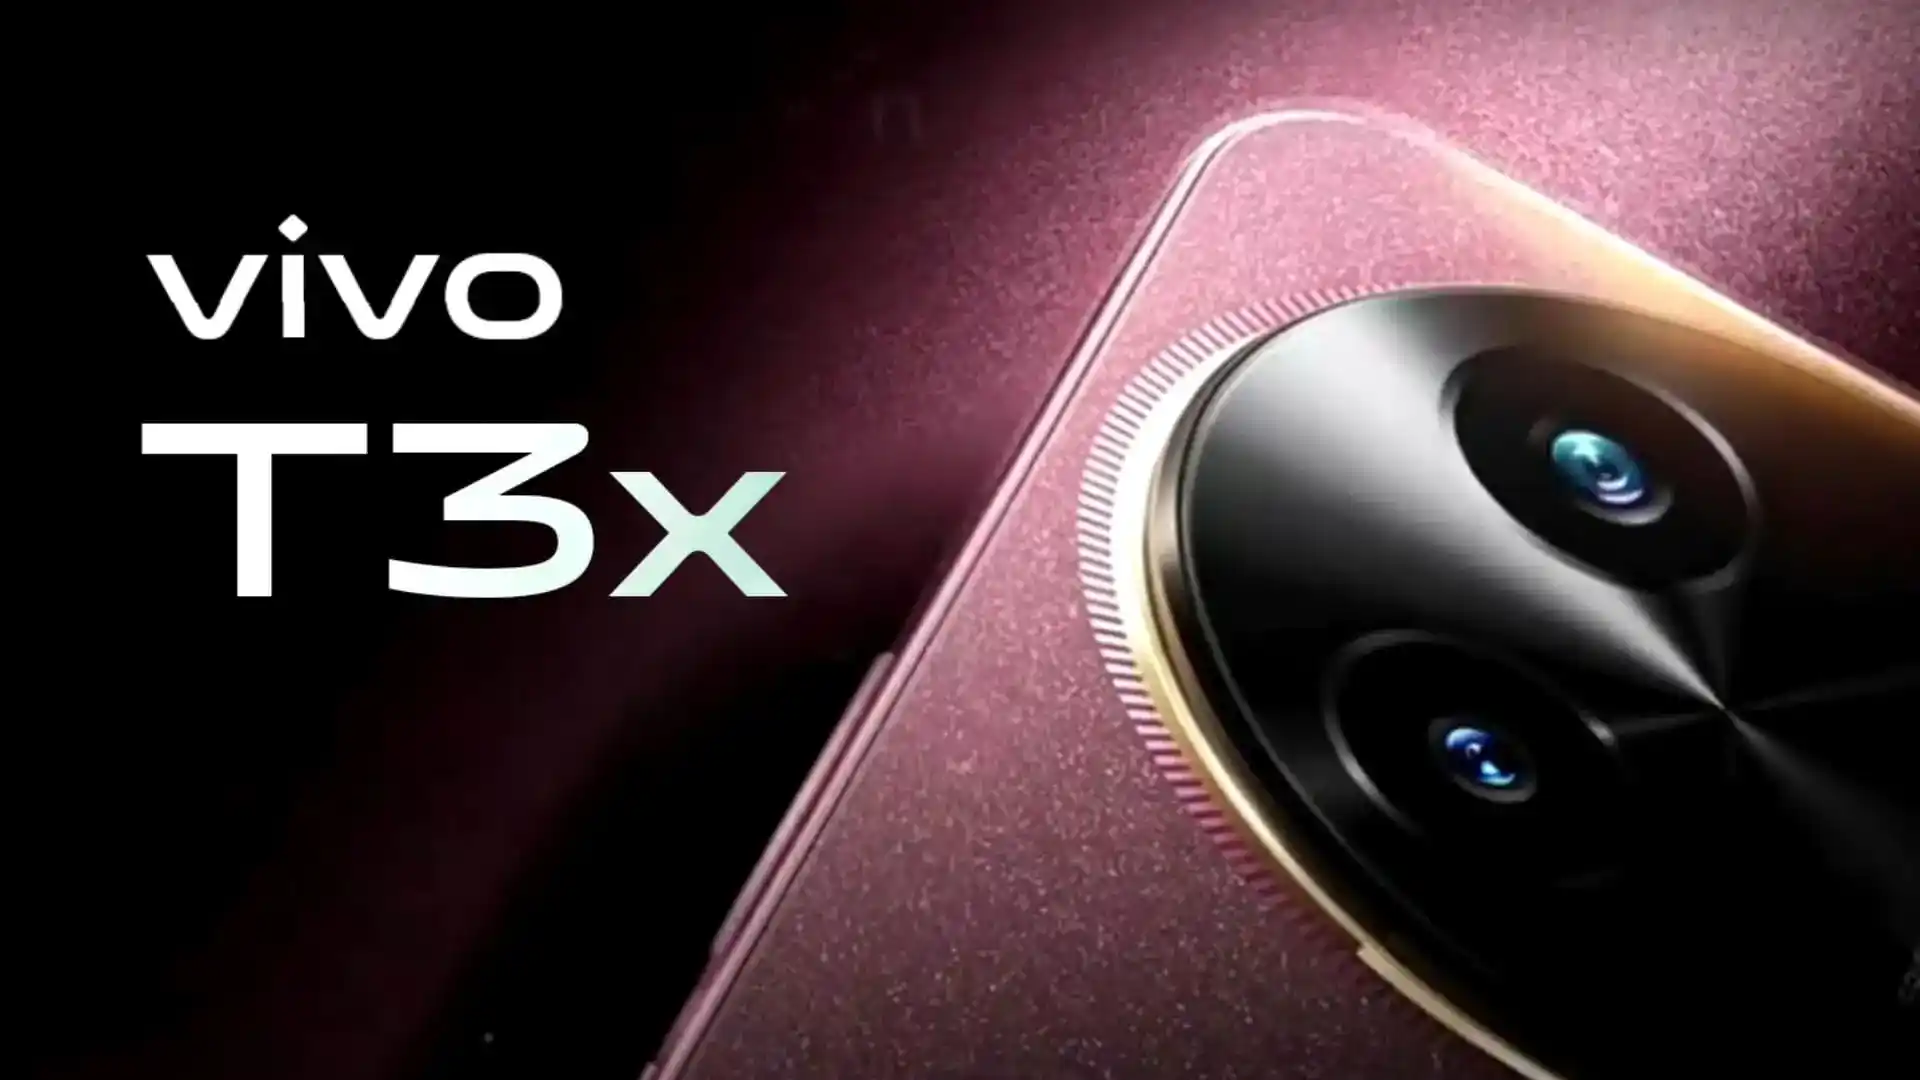 लॉन्च से पहले सामने आएं Vivo T3x के शानदार फीचर्स, होगा बड़ी बैटरी वाला Vivo का पहला Slim Smartphone Amazing features of Vivo T3x revealed before launch, it will be Vivo's first slim smartphone with big battery SIG BIS